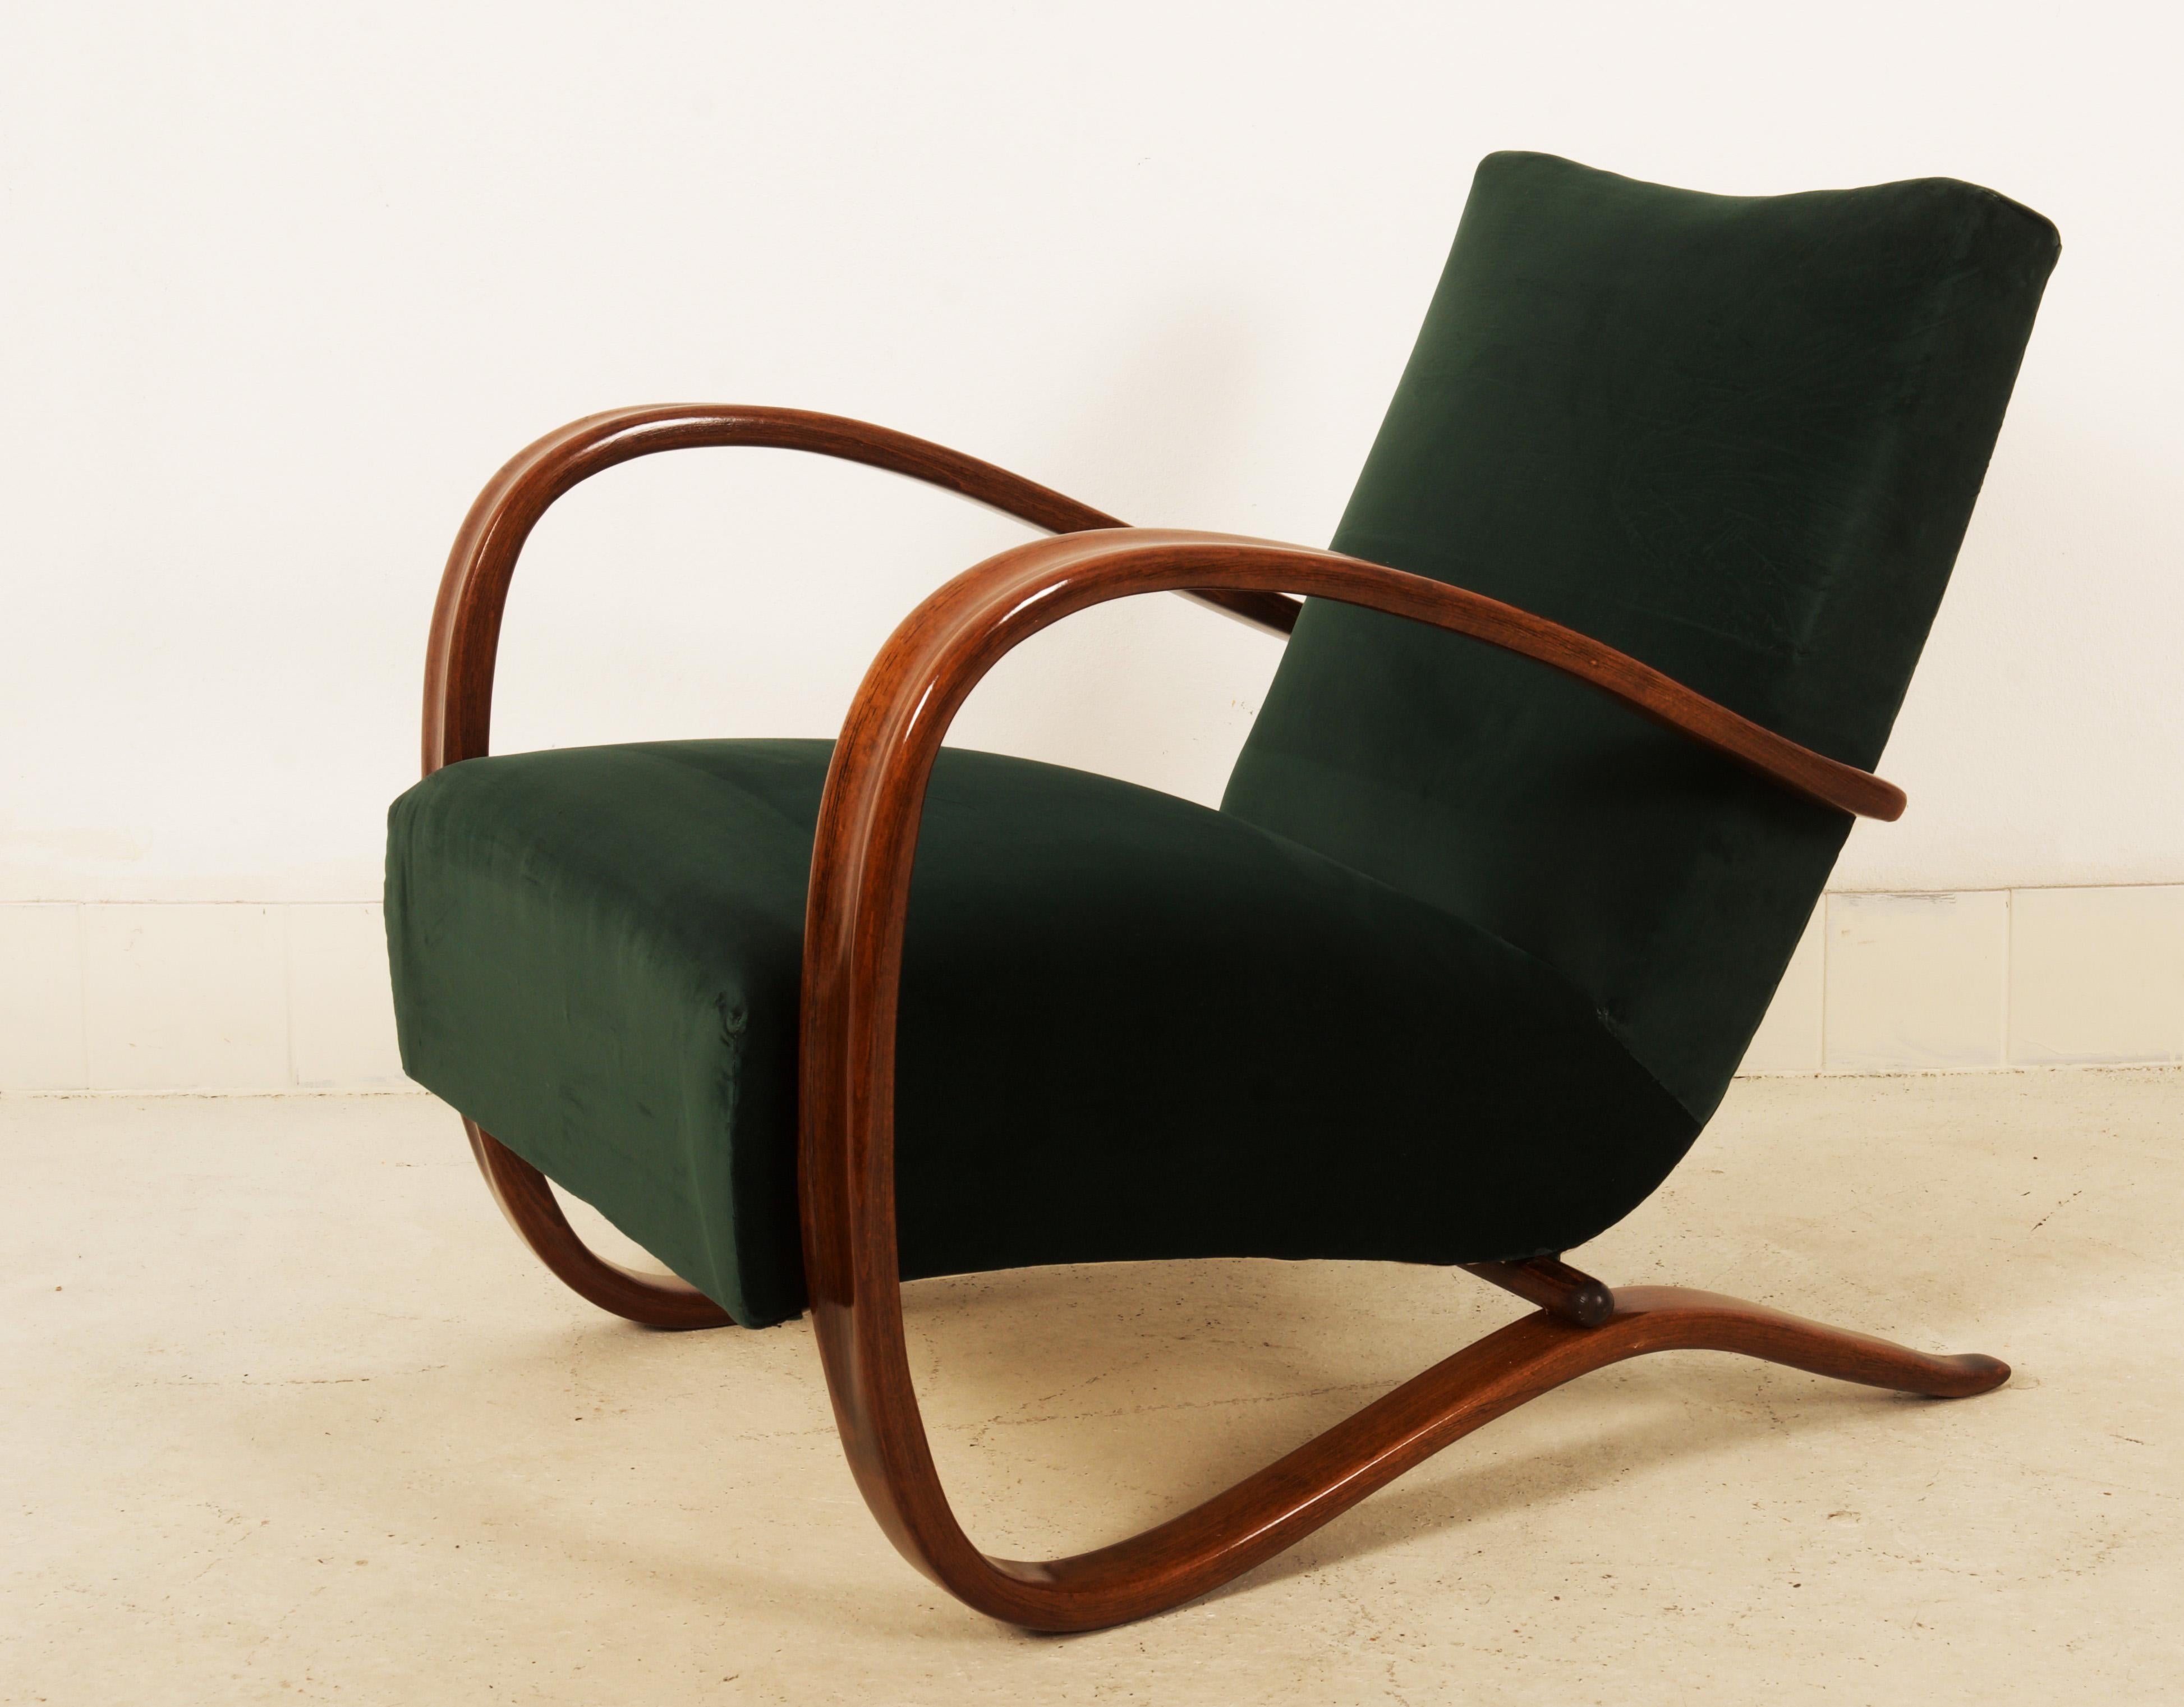 Bugholzsessel aus Buche, nussbaumfarben gebeizt, hergestellt von Thonet in den 1930er Jahren.
Hervorragend restauriert mit Sitzfedern, die mit grünem Samt bezogen sind.
Andere Stoff- und Holzausführungen auf Anfrage möglich
Auf Anfrage mehrere